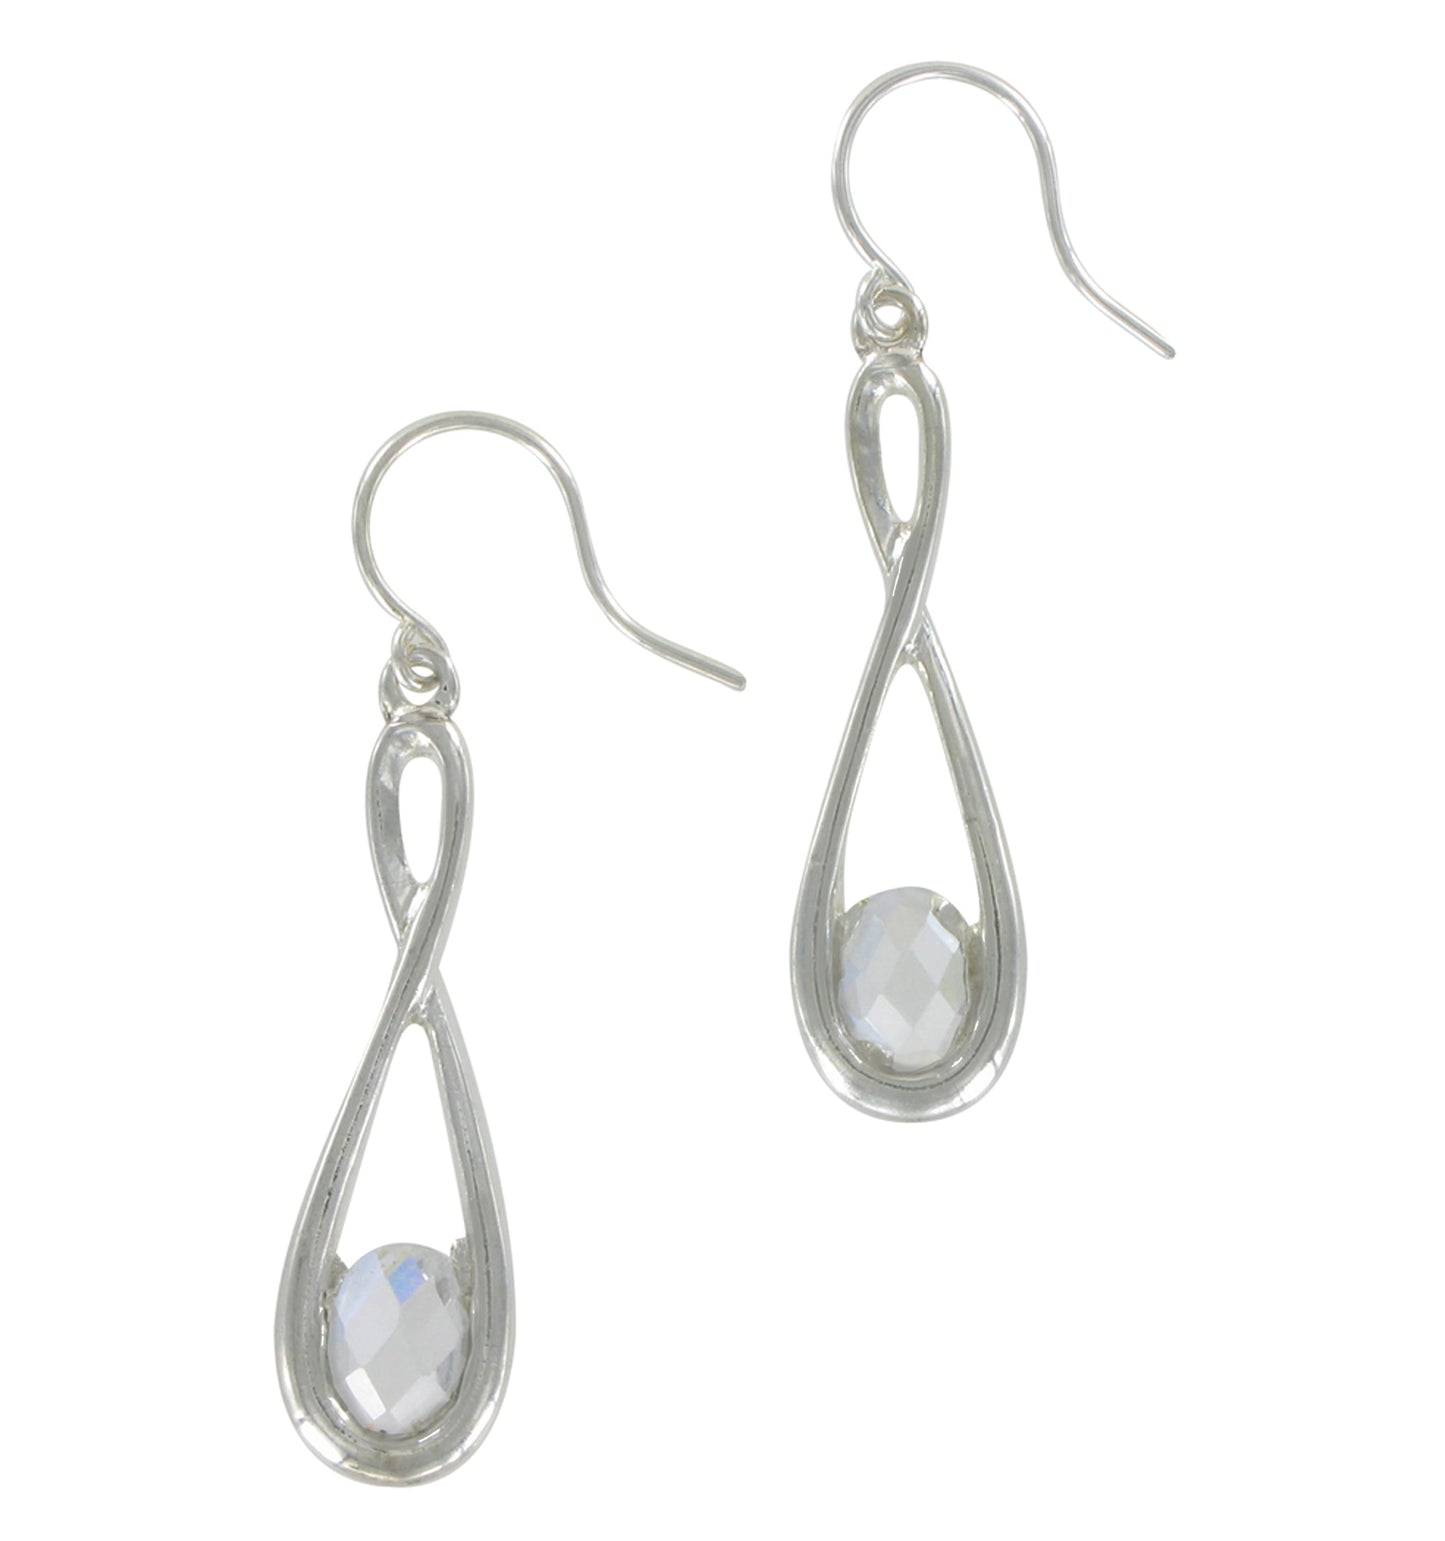 Dangle Pierced Earrings Silver Tone Rhinestone Teardrop Loop 1 1/8"